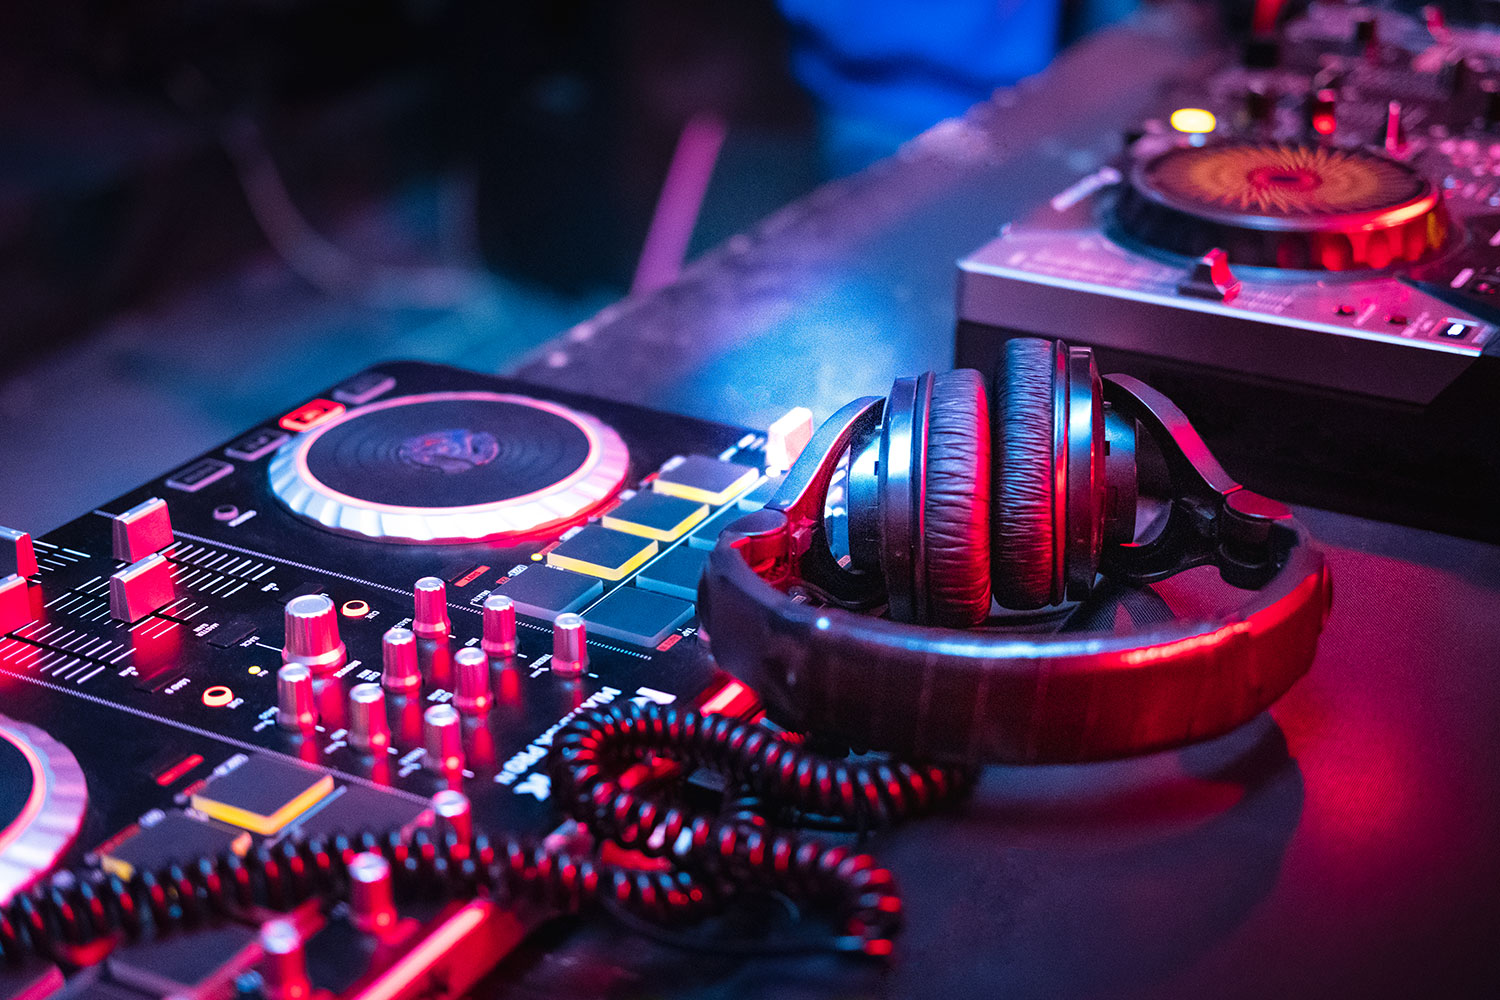 The Top 5 Studio and DJ Headphones of 2014